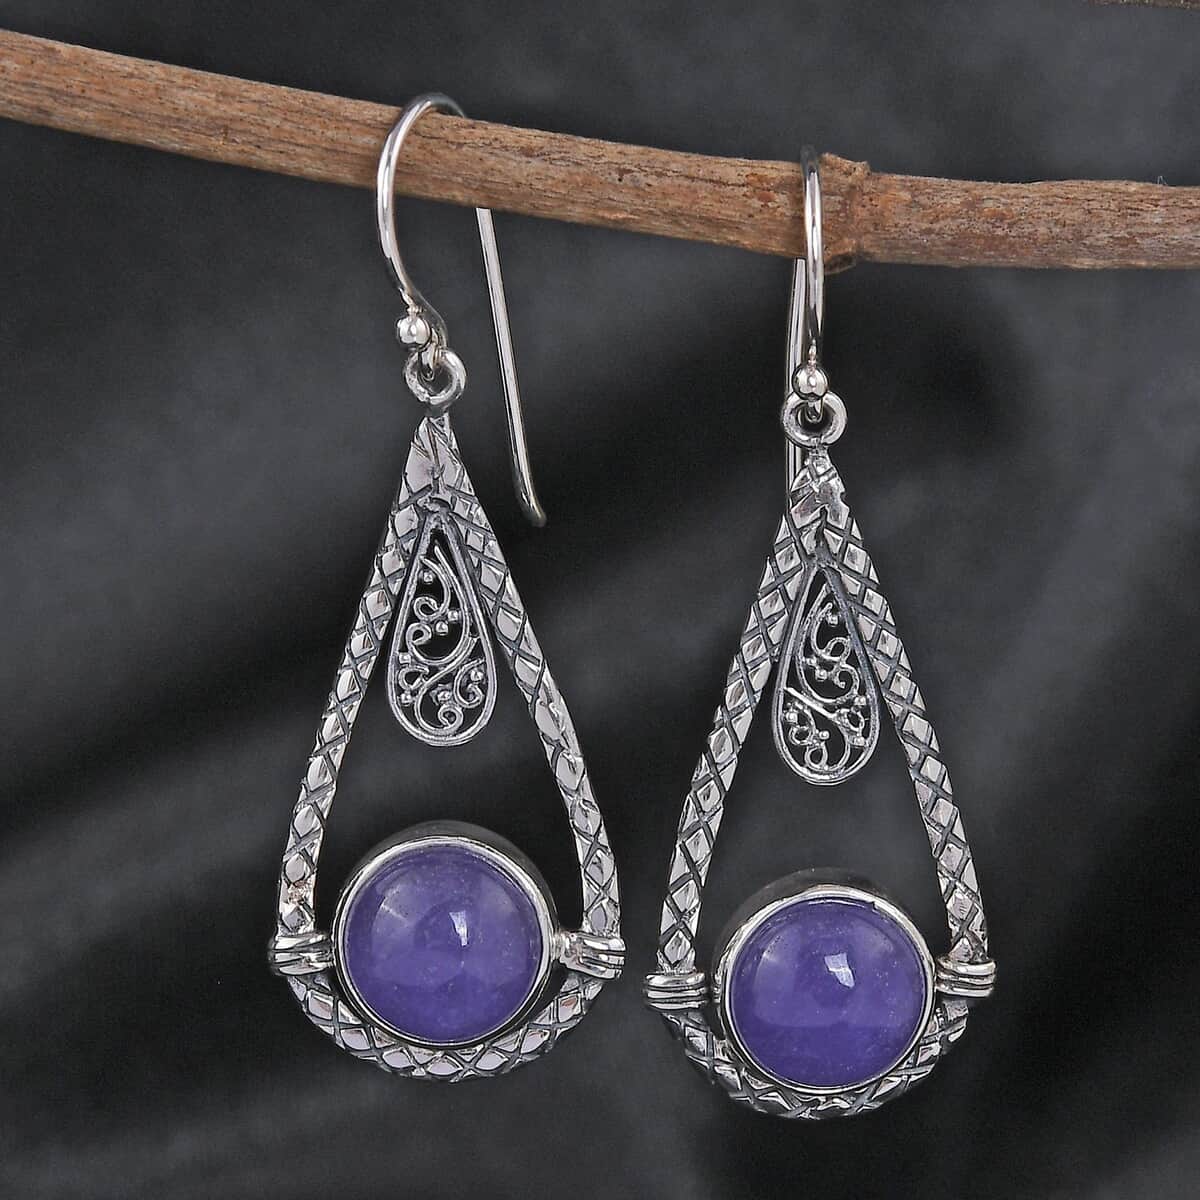 Buy Bali Legacy Purple Jade (D) Earrings in Sterling Silver 4.50 ctw at ...